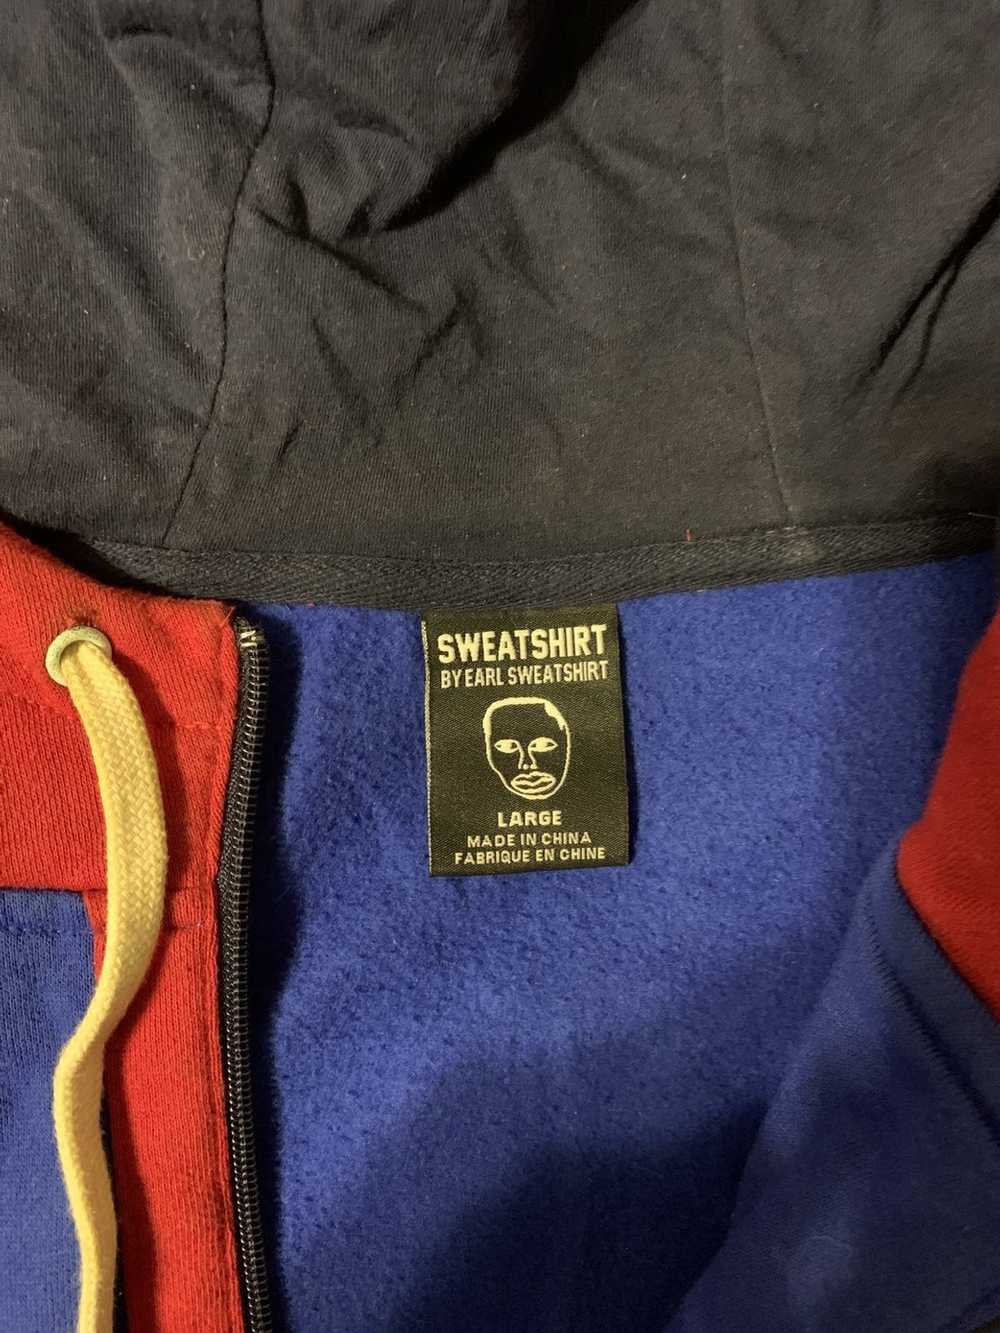 Earl Sweatshirt Sweat shirt by Earl Sweat Sweatsh… - image 3